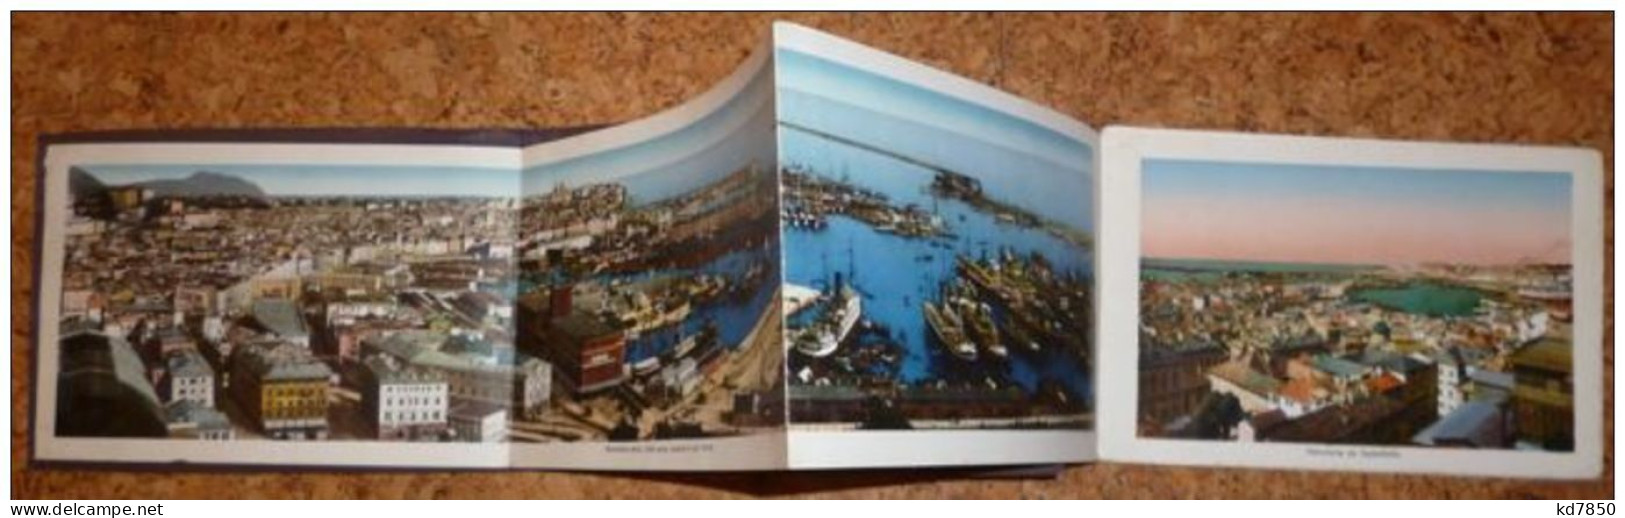 Ricordo Di Genova - Booklet - 25 Bilder - Genova (Genoa)